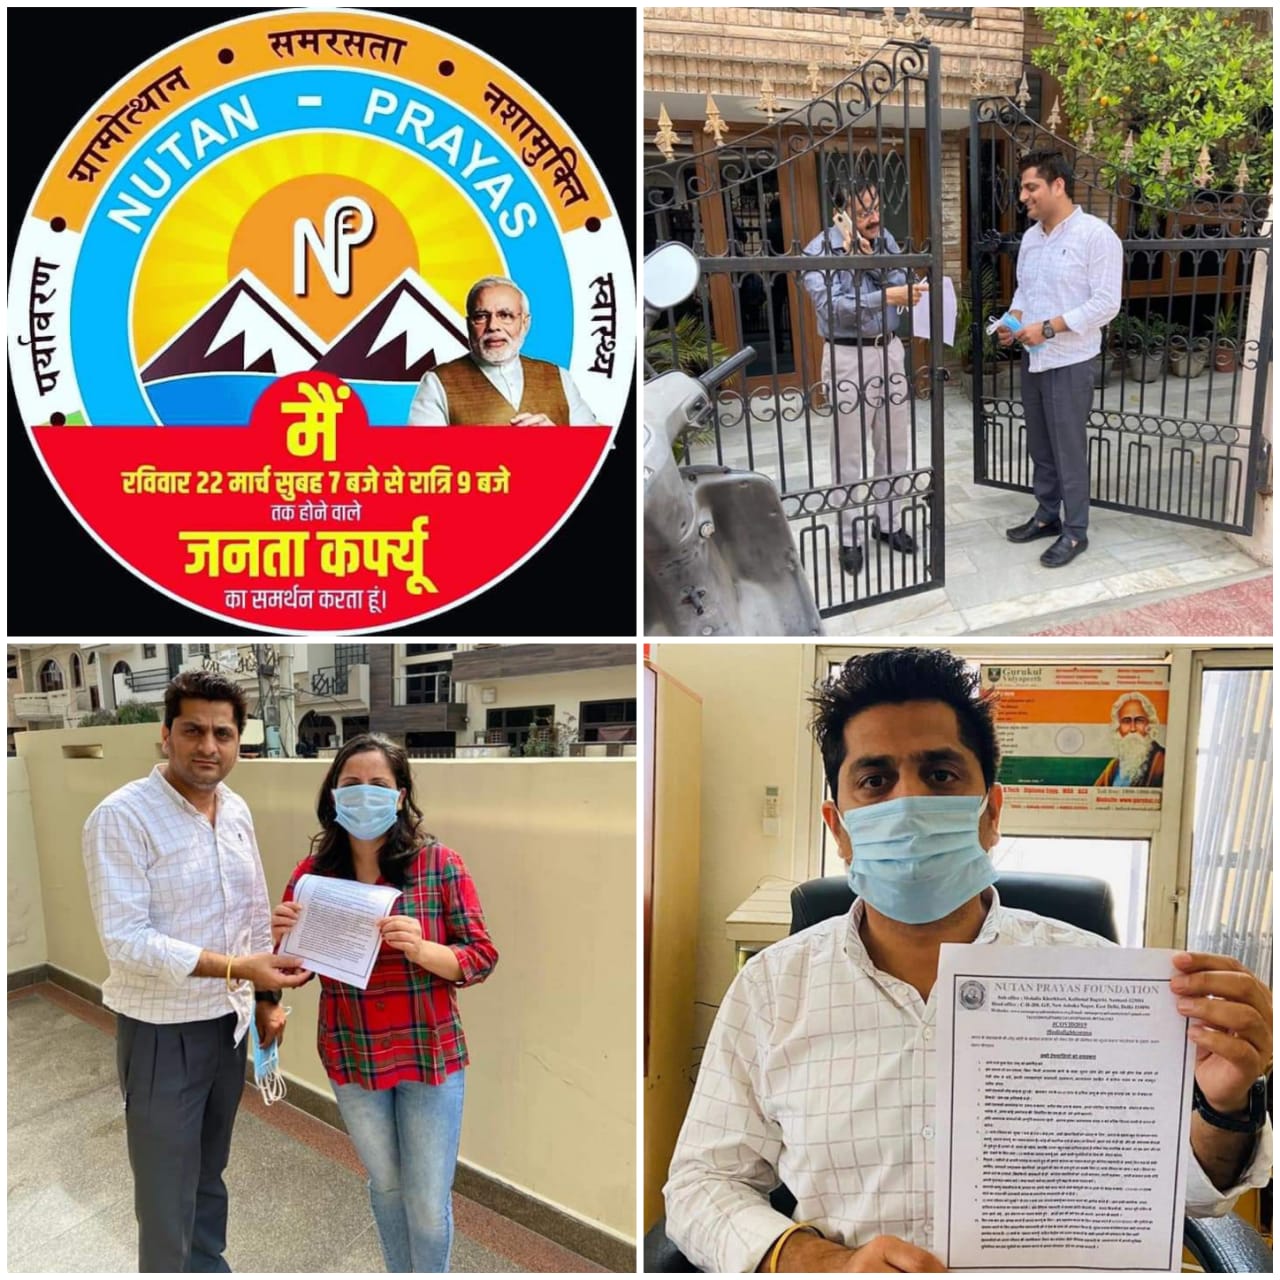 #IndiaFightsCorona हरियाणा के अंबाला शहर में Nutan Prayas Foundation के सदस्यों ने अपने परिवार के सदस्यजनों को माननीय प्रधानमंत्री श्री नरेंद्र मोदी जी के कोरोना वायरस के संदर्भ में देश को संबोधन की जानकारी दी एवं निःशुल्क जानकारी पत्रक वितरित किये और सभी से रविवार 22 मार्च को सुबह 7 बजे से रात्रि 9 बजे तक होने वाले #जनताकर्फ्यू के लिए पूर्णतय समर्थन व् स्वयं की स्वछतापूर्ण समझदारी से सावधानीपूर्वक संयमता बनाये रखने का आग्रह किया - gallery